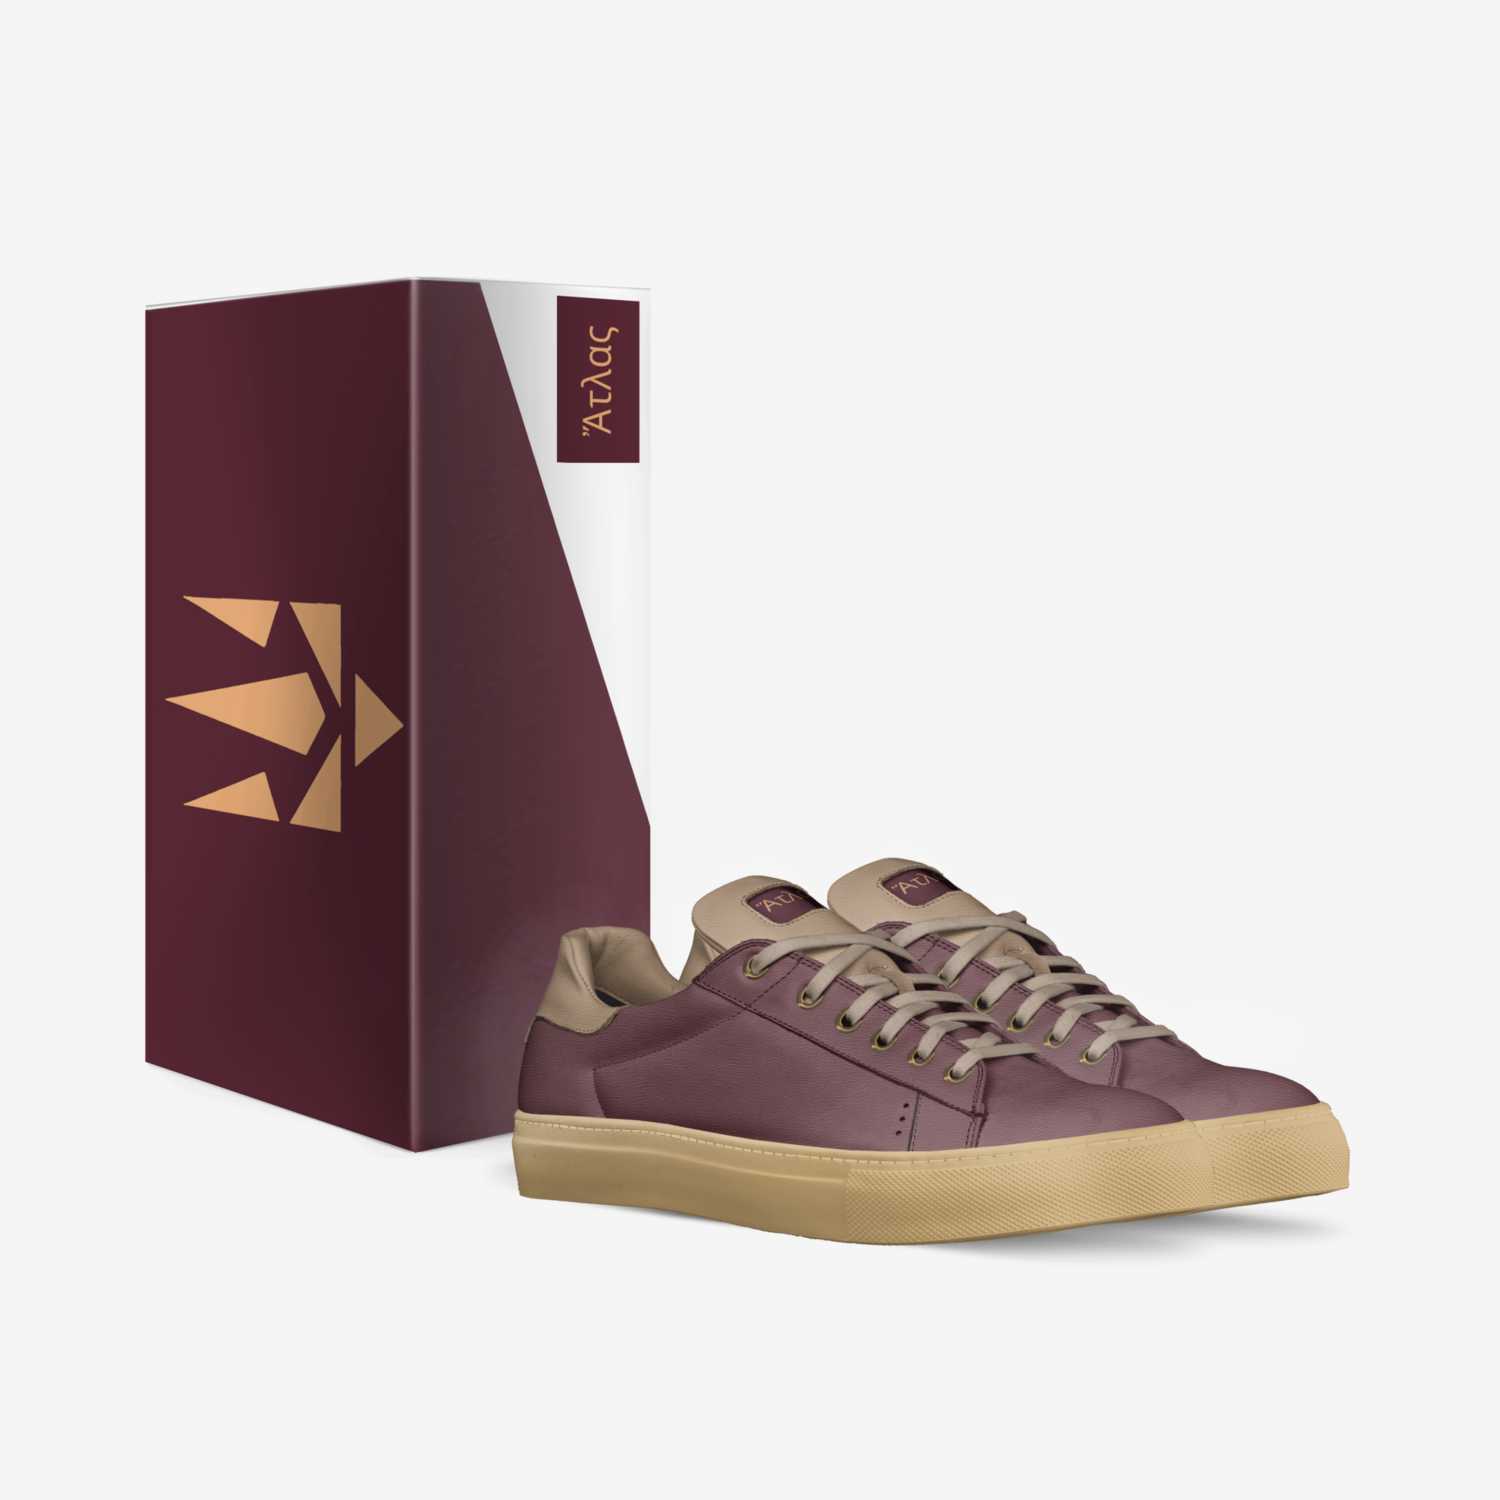 A T L A S custom made in Italy shoes by Ryan G. Rgp Enterprises | Box view